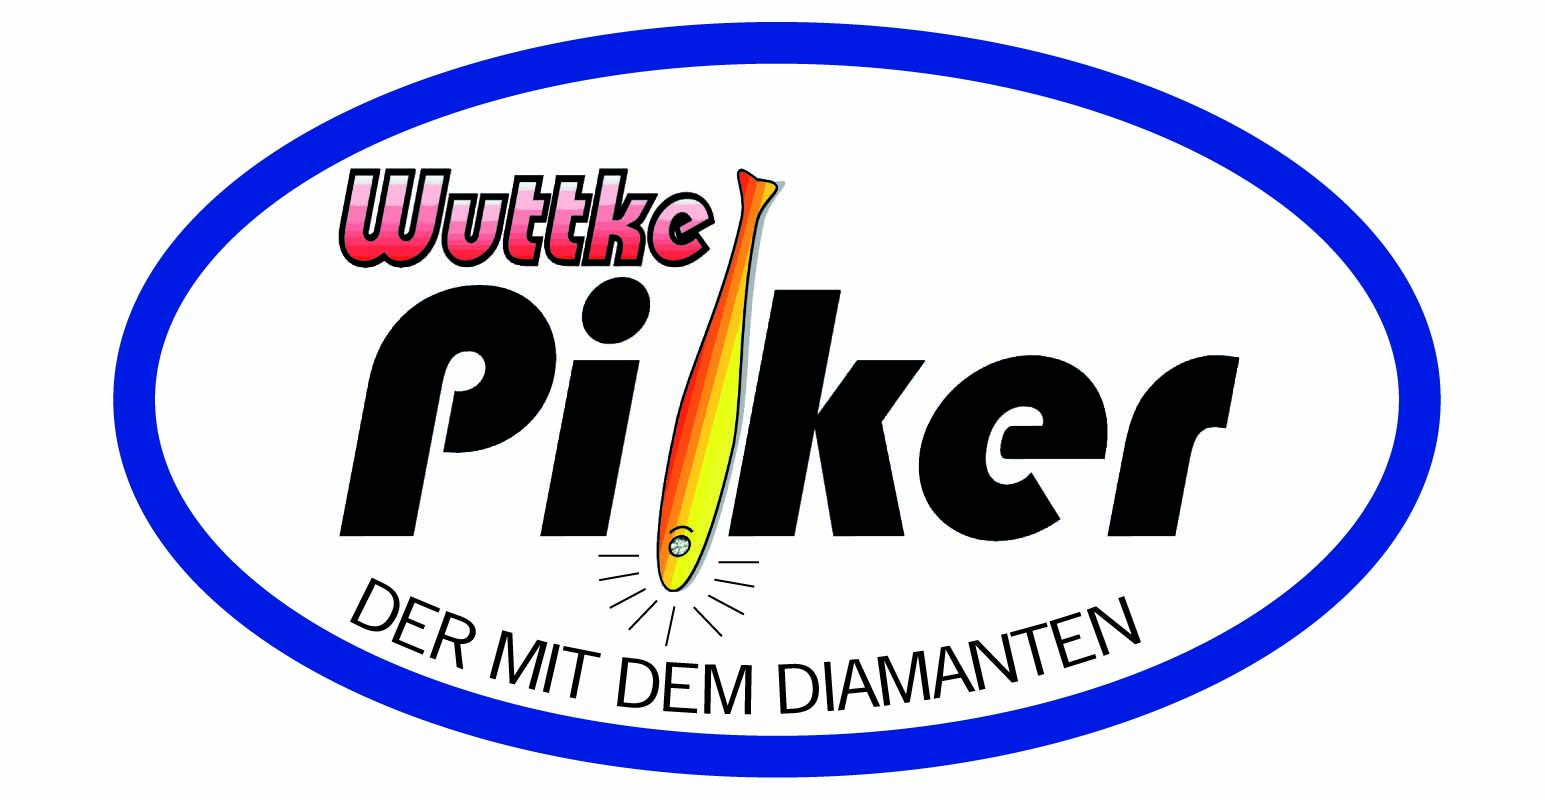 Wuttke Pilker